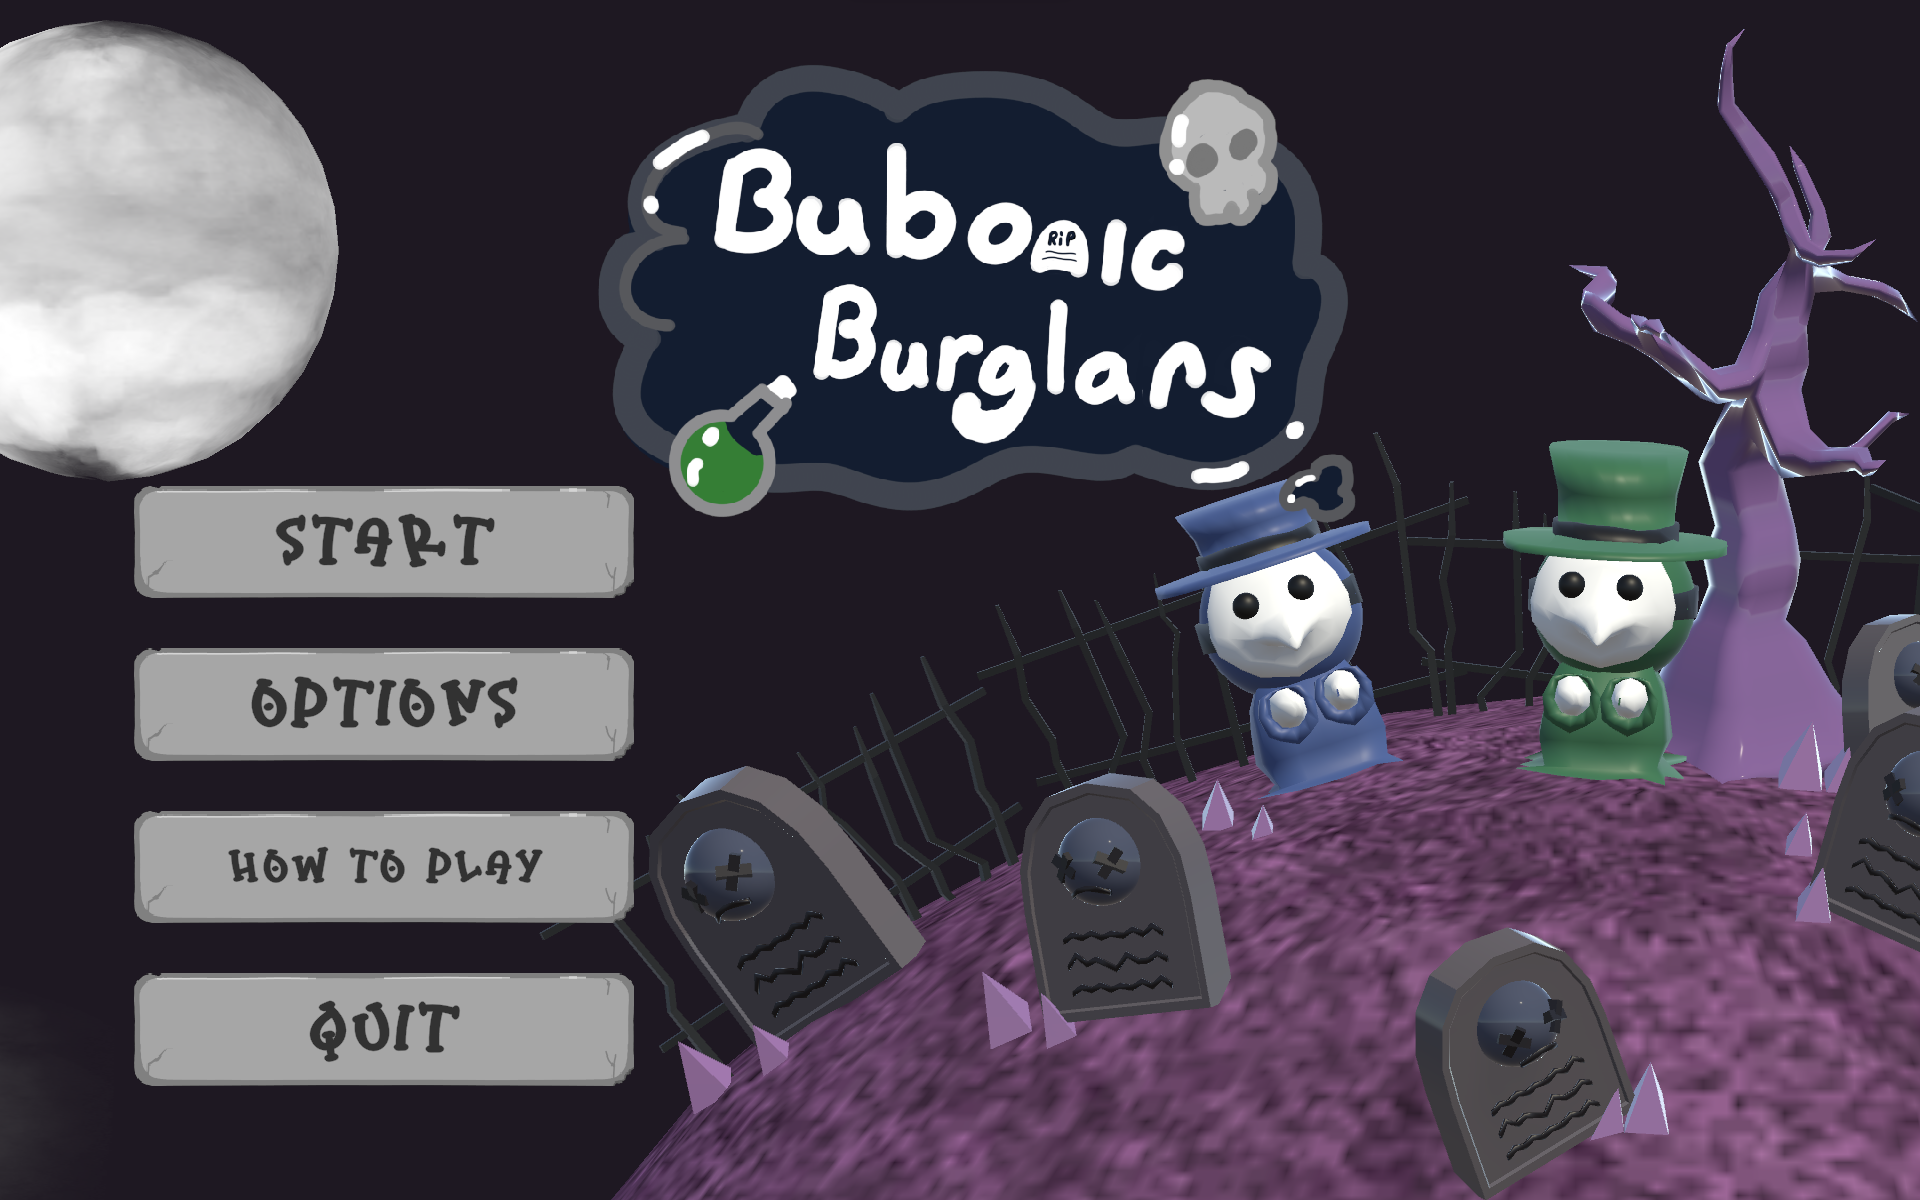 Bubonic Burglars